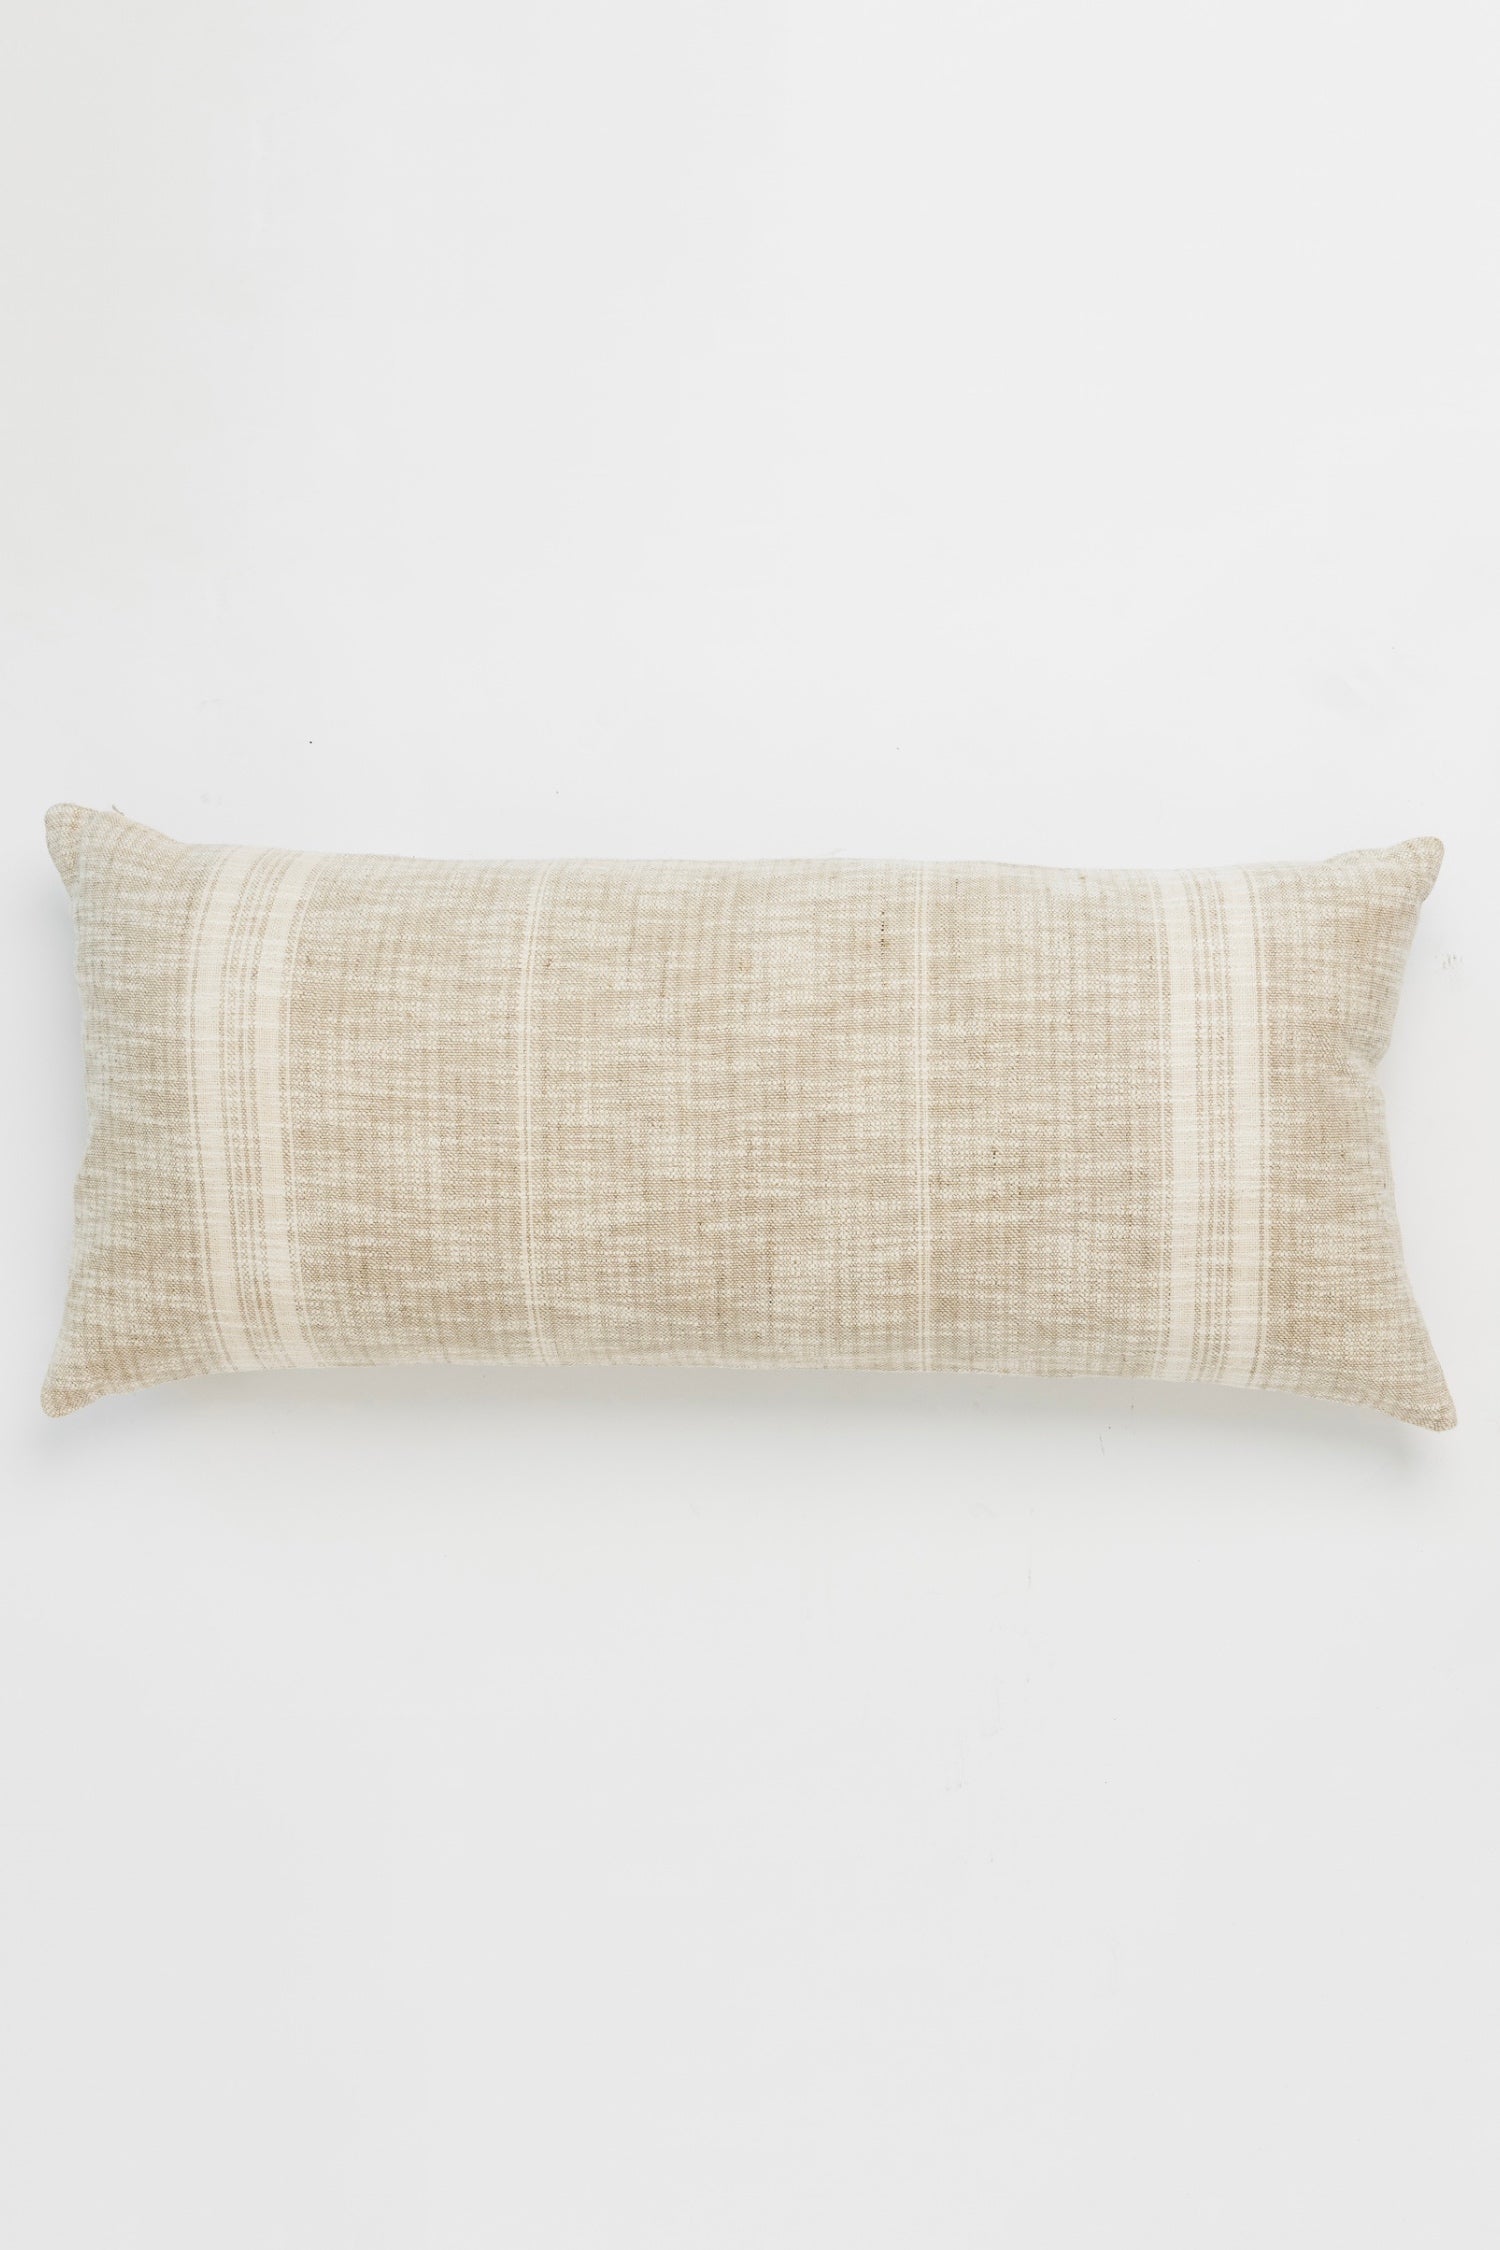 Vespera Lumbar Pillow - Natural - Set of 2